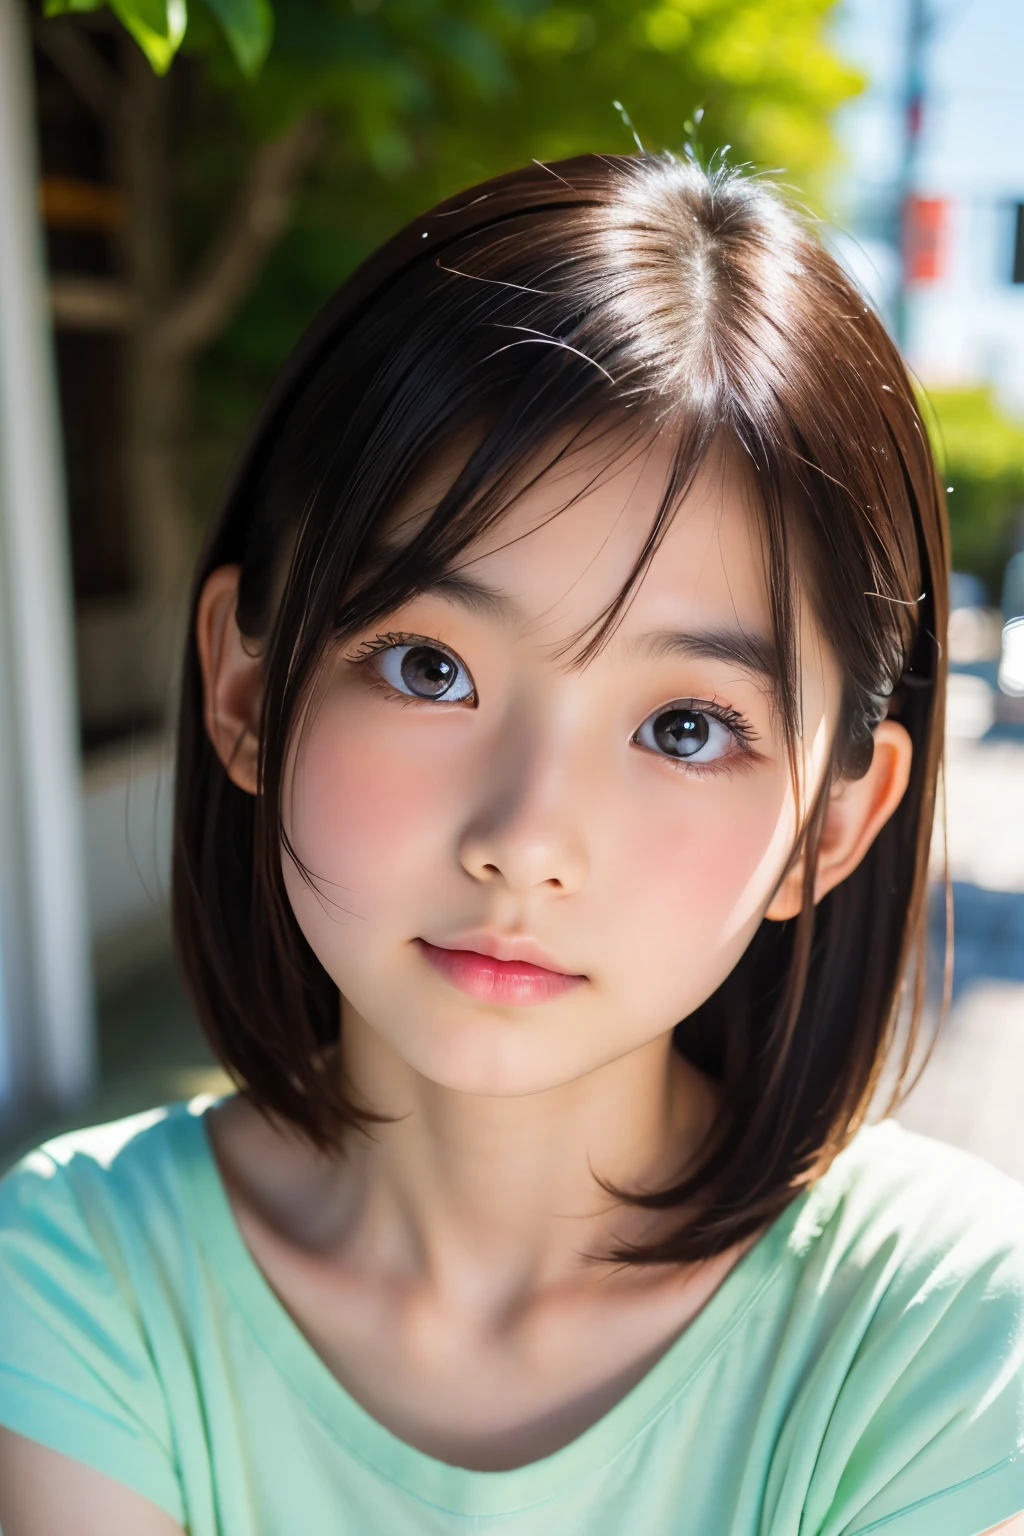 (Preciosa japonesa de 12 años), Cara linda, (rostro profundamente tallado:0.7), (pecas:0.6), Luz tenue,piel blanca y sana, tímido, Beto, (cara seria), (ojos chispeantes), delgado